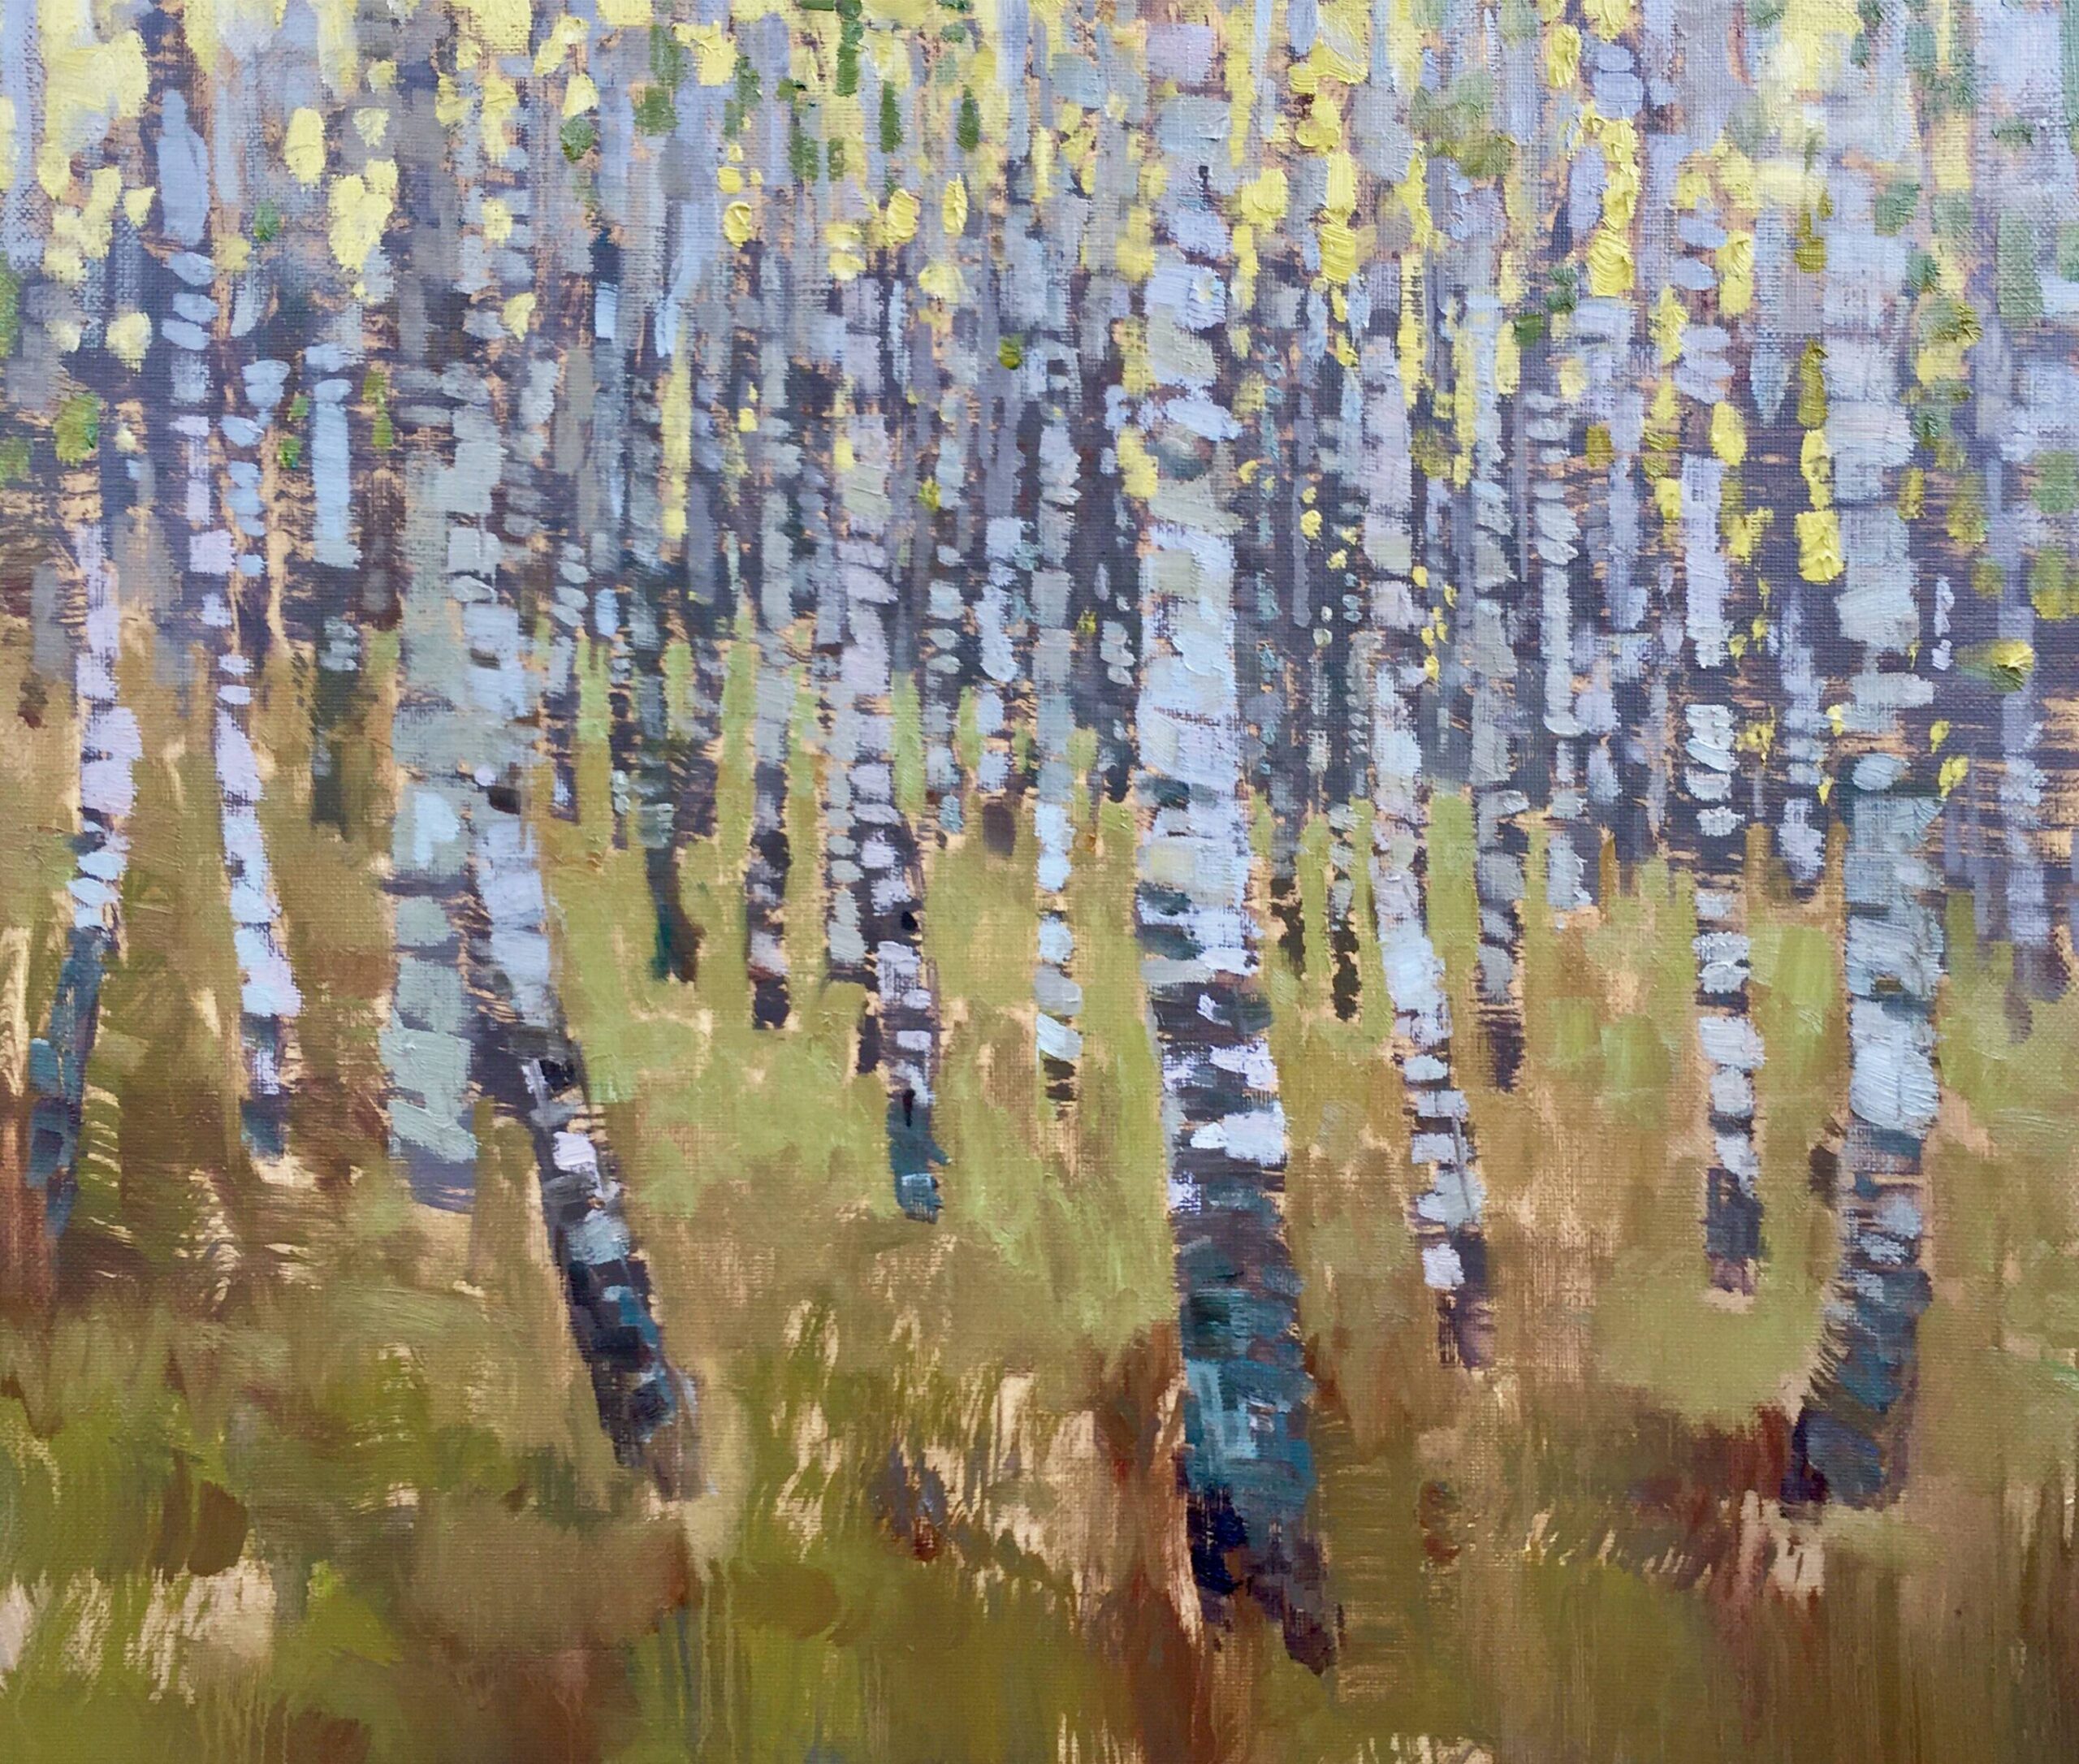 Aimee Erickson, "Birches of Volzhkiy Priboy," oil on linen, 15 3/4 x 23 2/3 in.